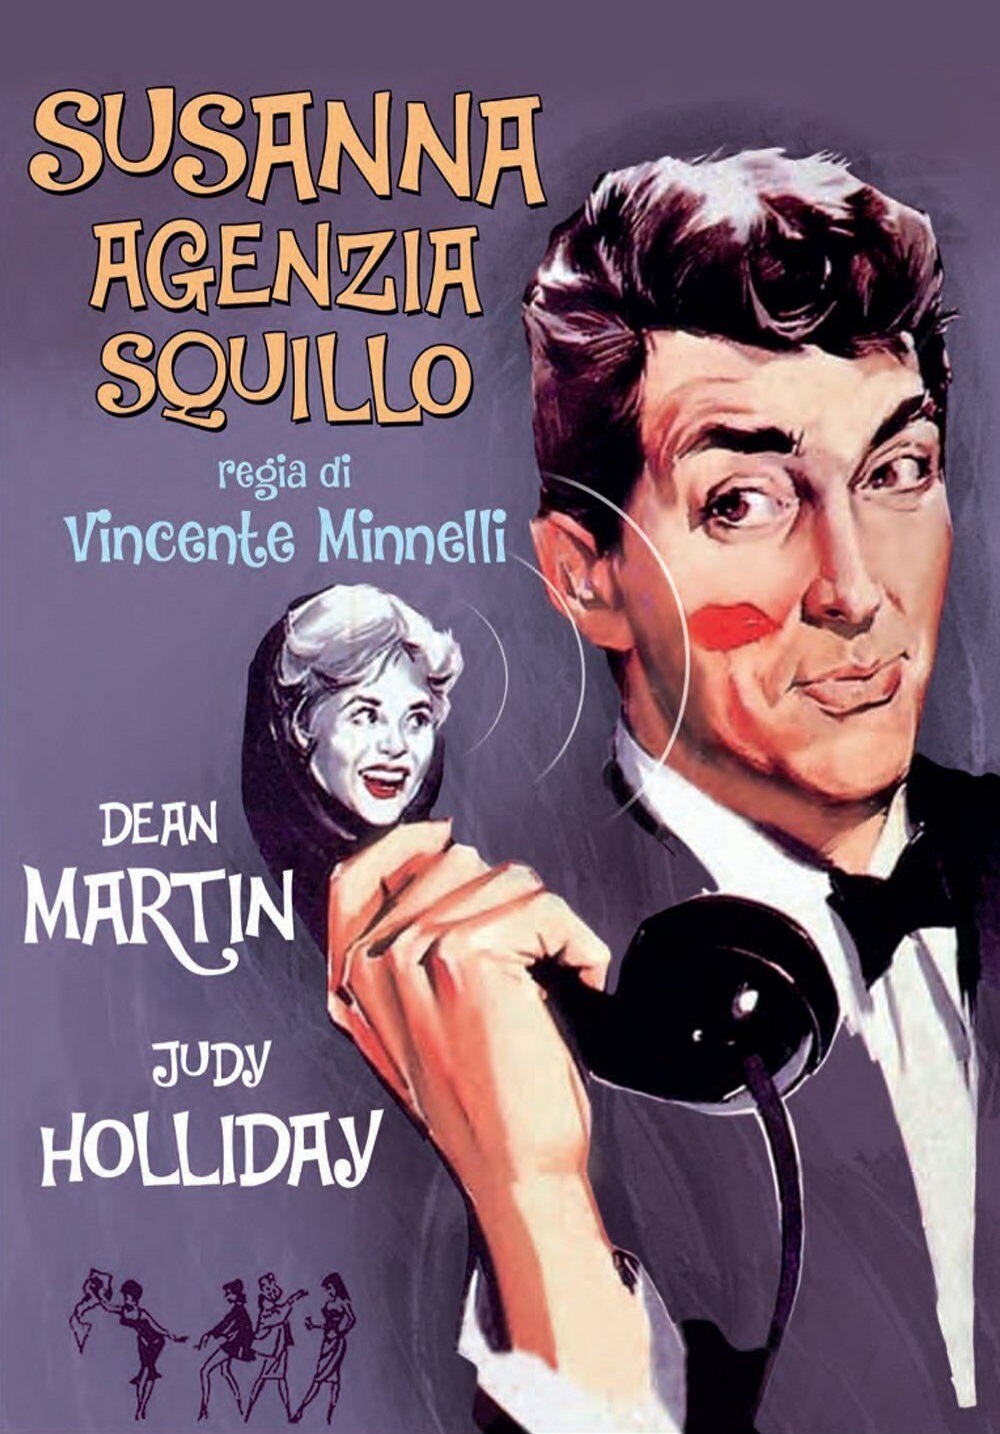 Susanna agenzia squillo (1960)